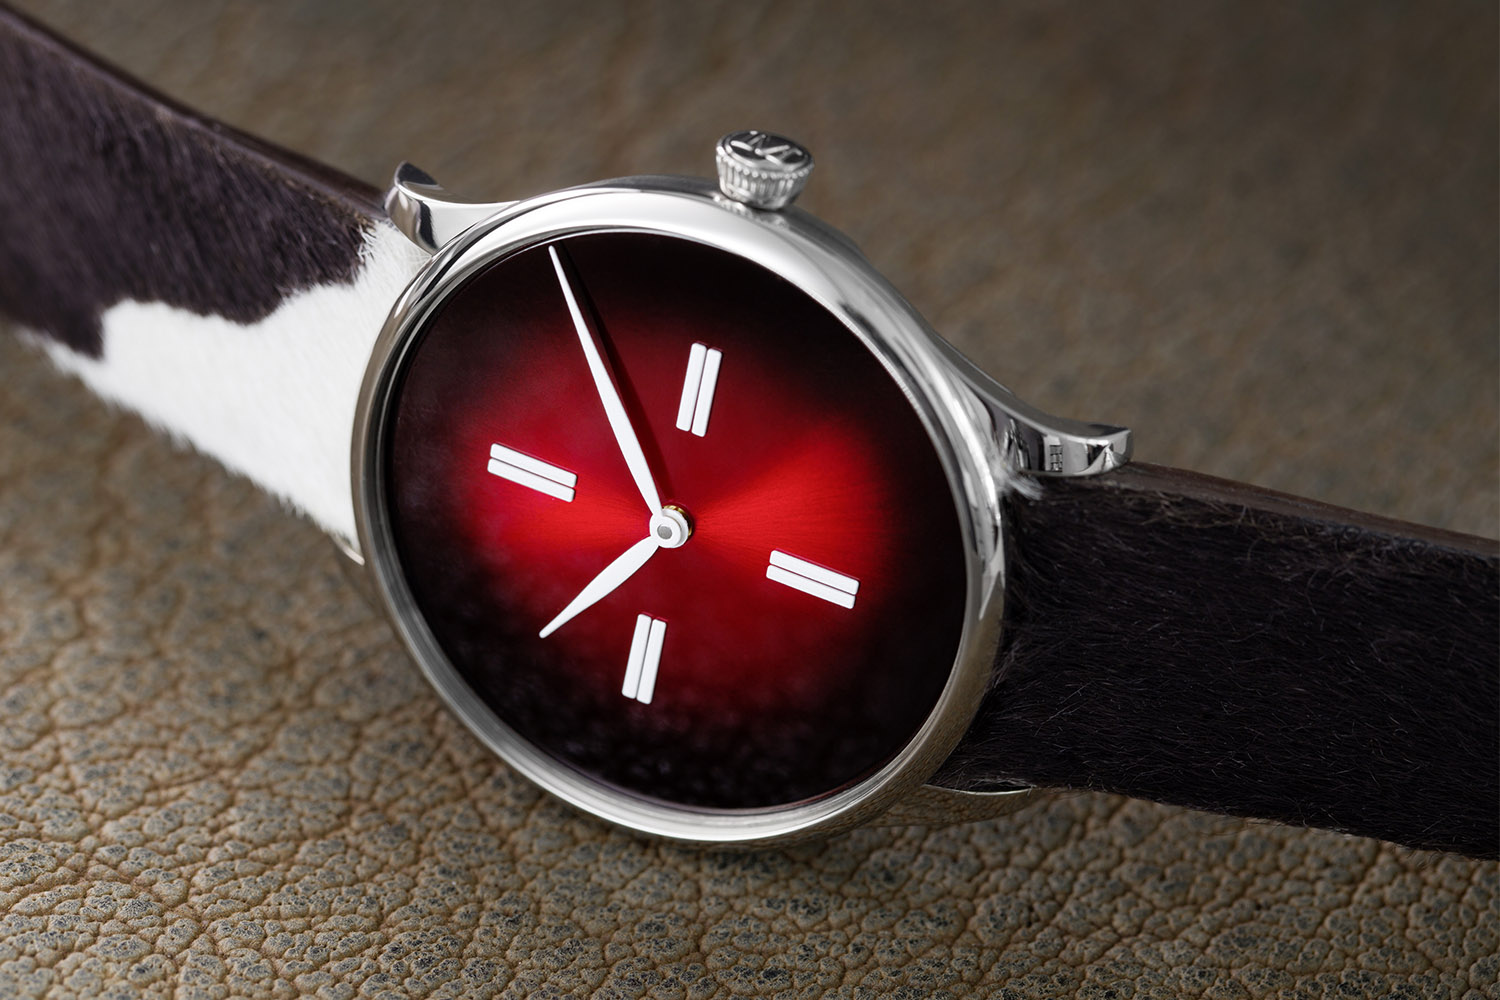 Moser Venturer Swiss Mad - 100% Swiss Made watch